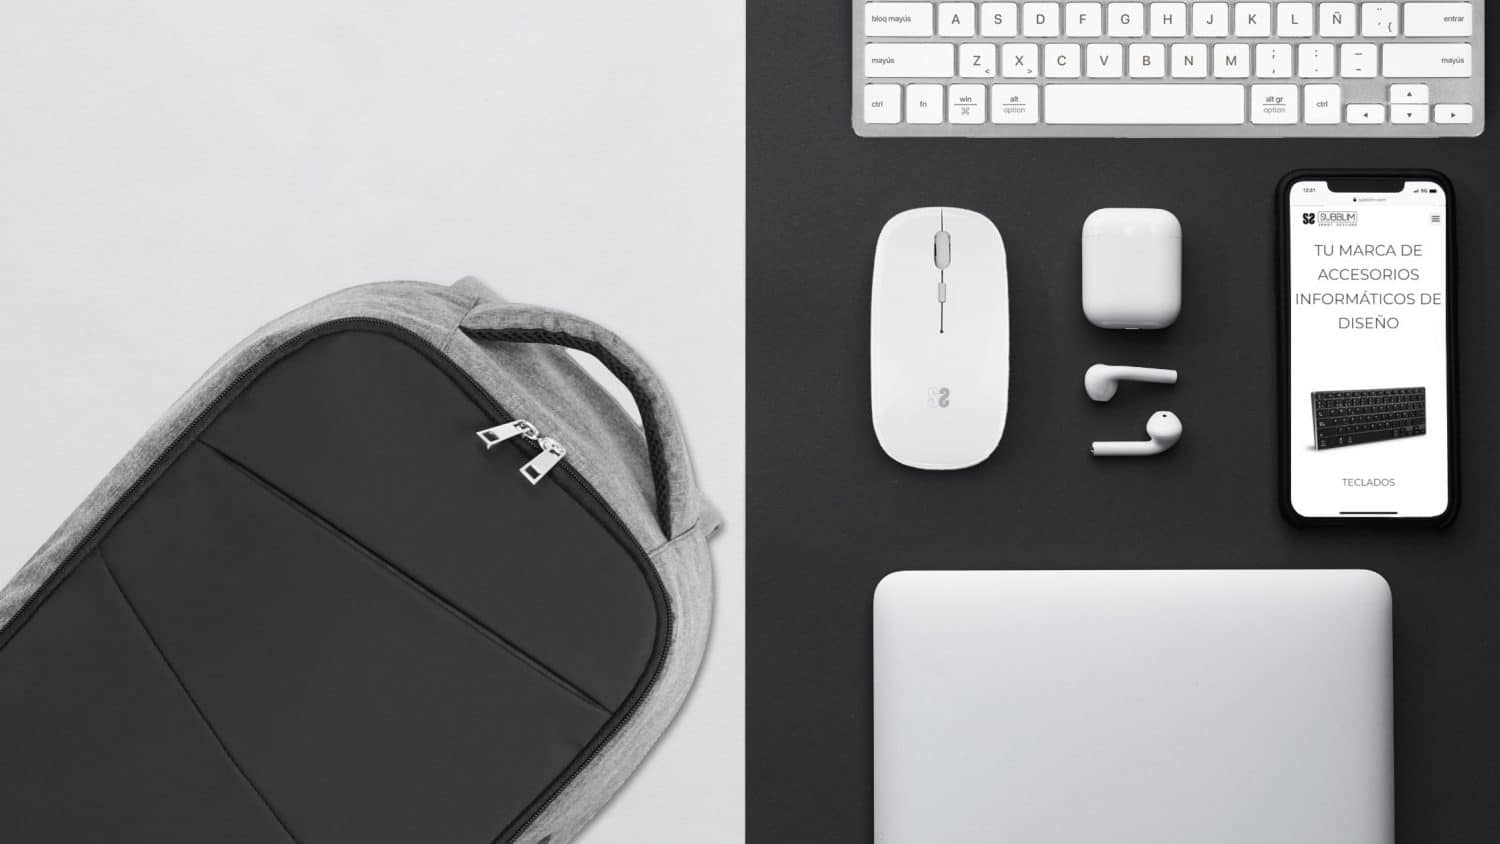 accesorios para trabajar desde casa o la oficina, para llevar tus dispositivos de un lado a otro y tener un puesto de trabajo siempre confortable: teclado multidispositivo, ratón dual, mochila para portátil máxima protección